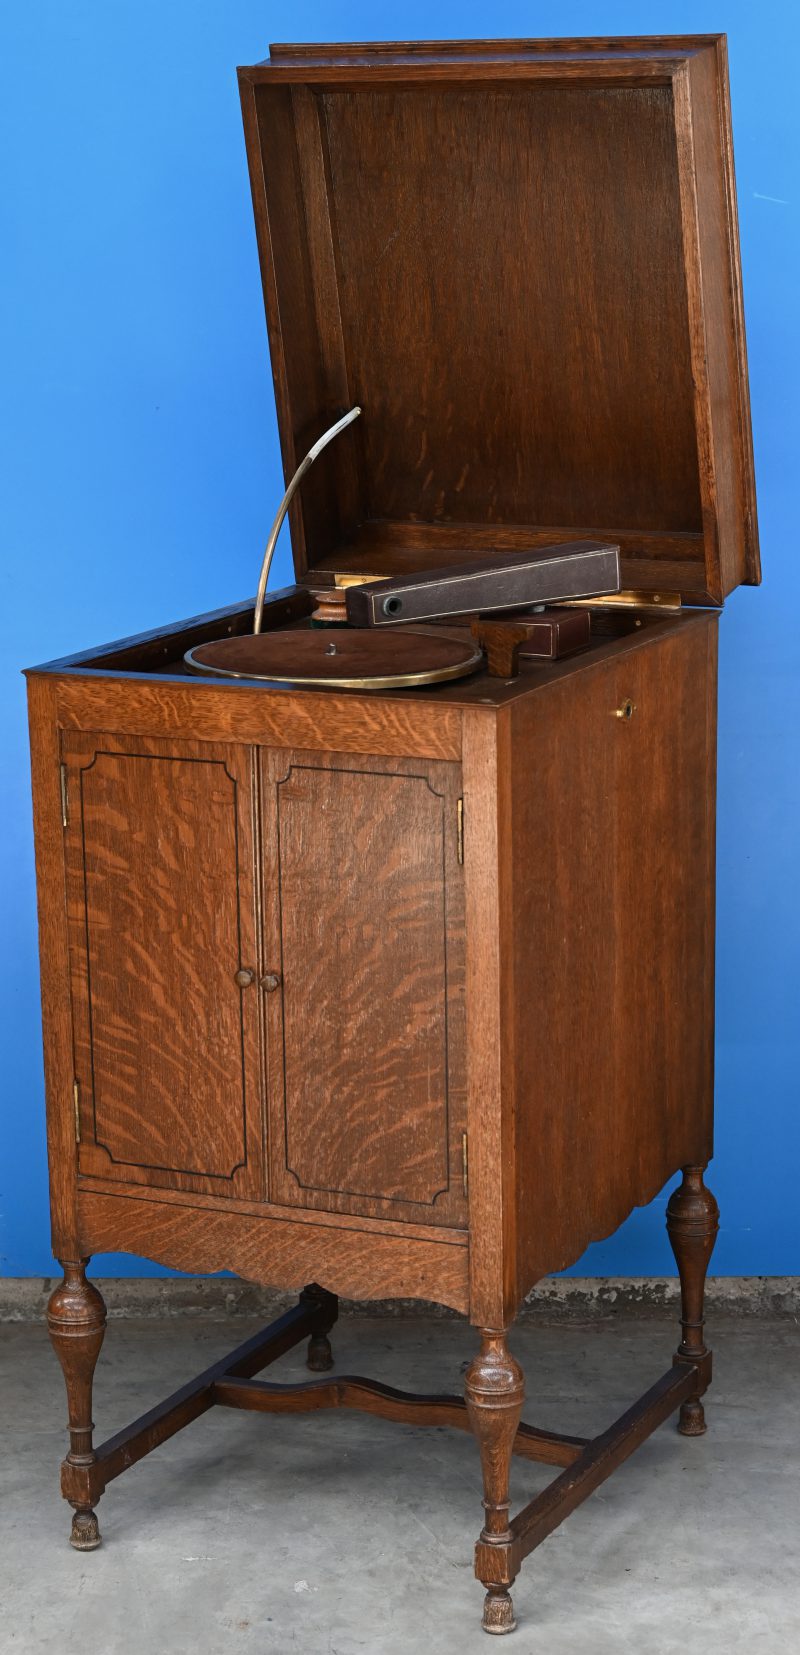 Een oude grammofoonspeler met oude platen. Zwengel en naald ontbreken.